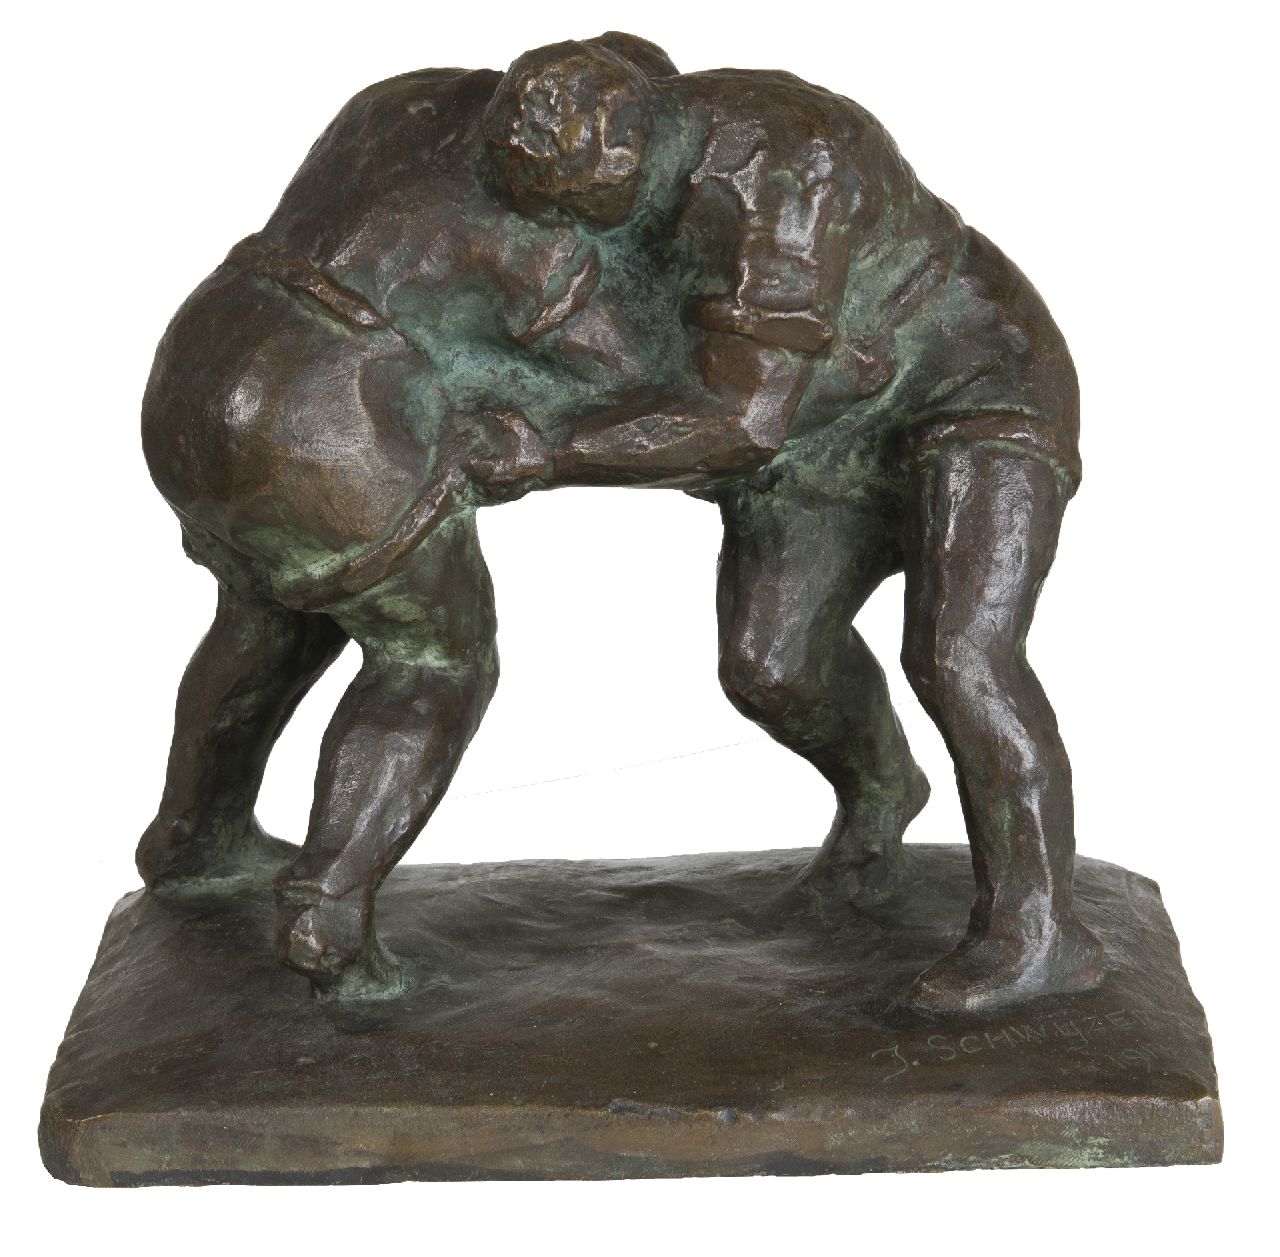 Schwyzer J.  | Julius Schwyzer | Beelden en objecten te koop aangeboden | Worstelaars, brons 23,0 x 25,0 cm, gesigneerd op basis en gedateerd 1917